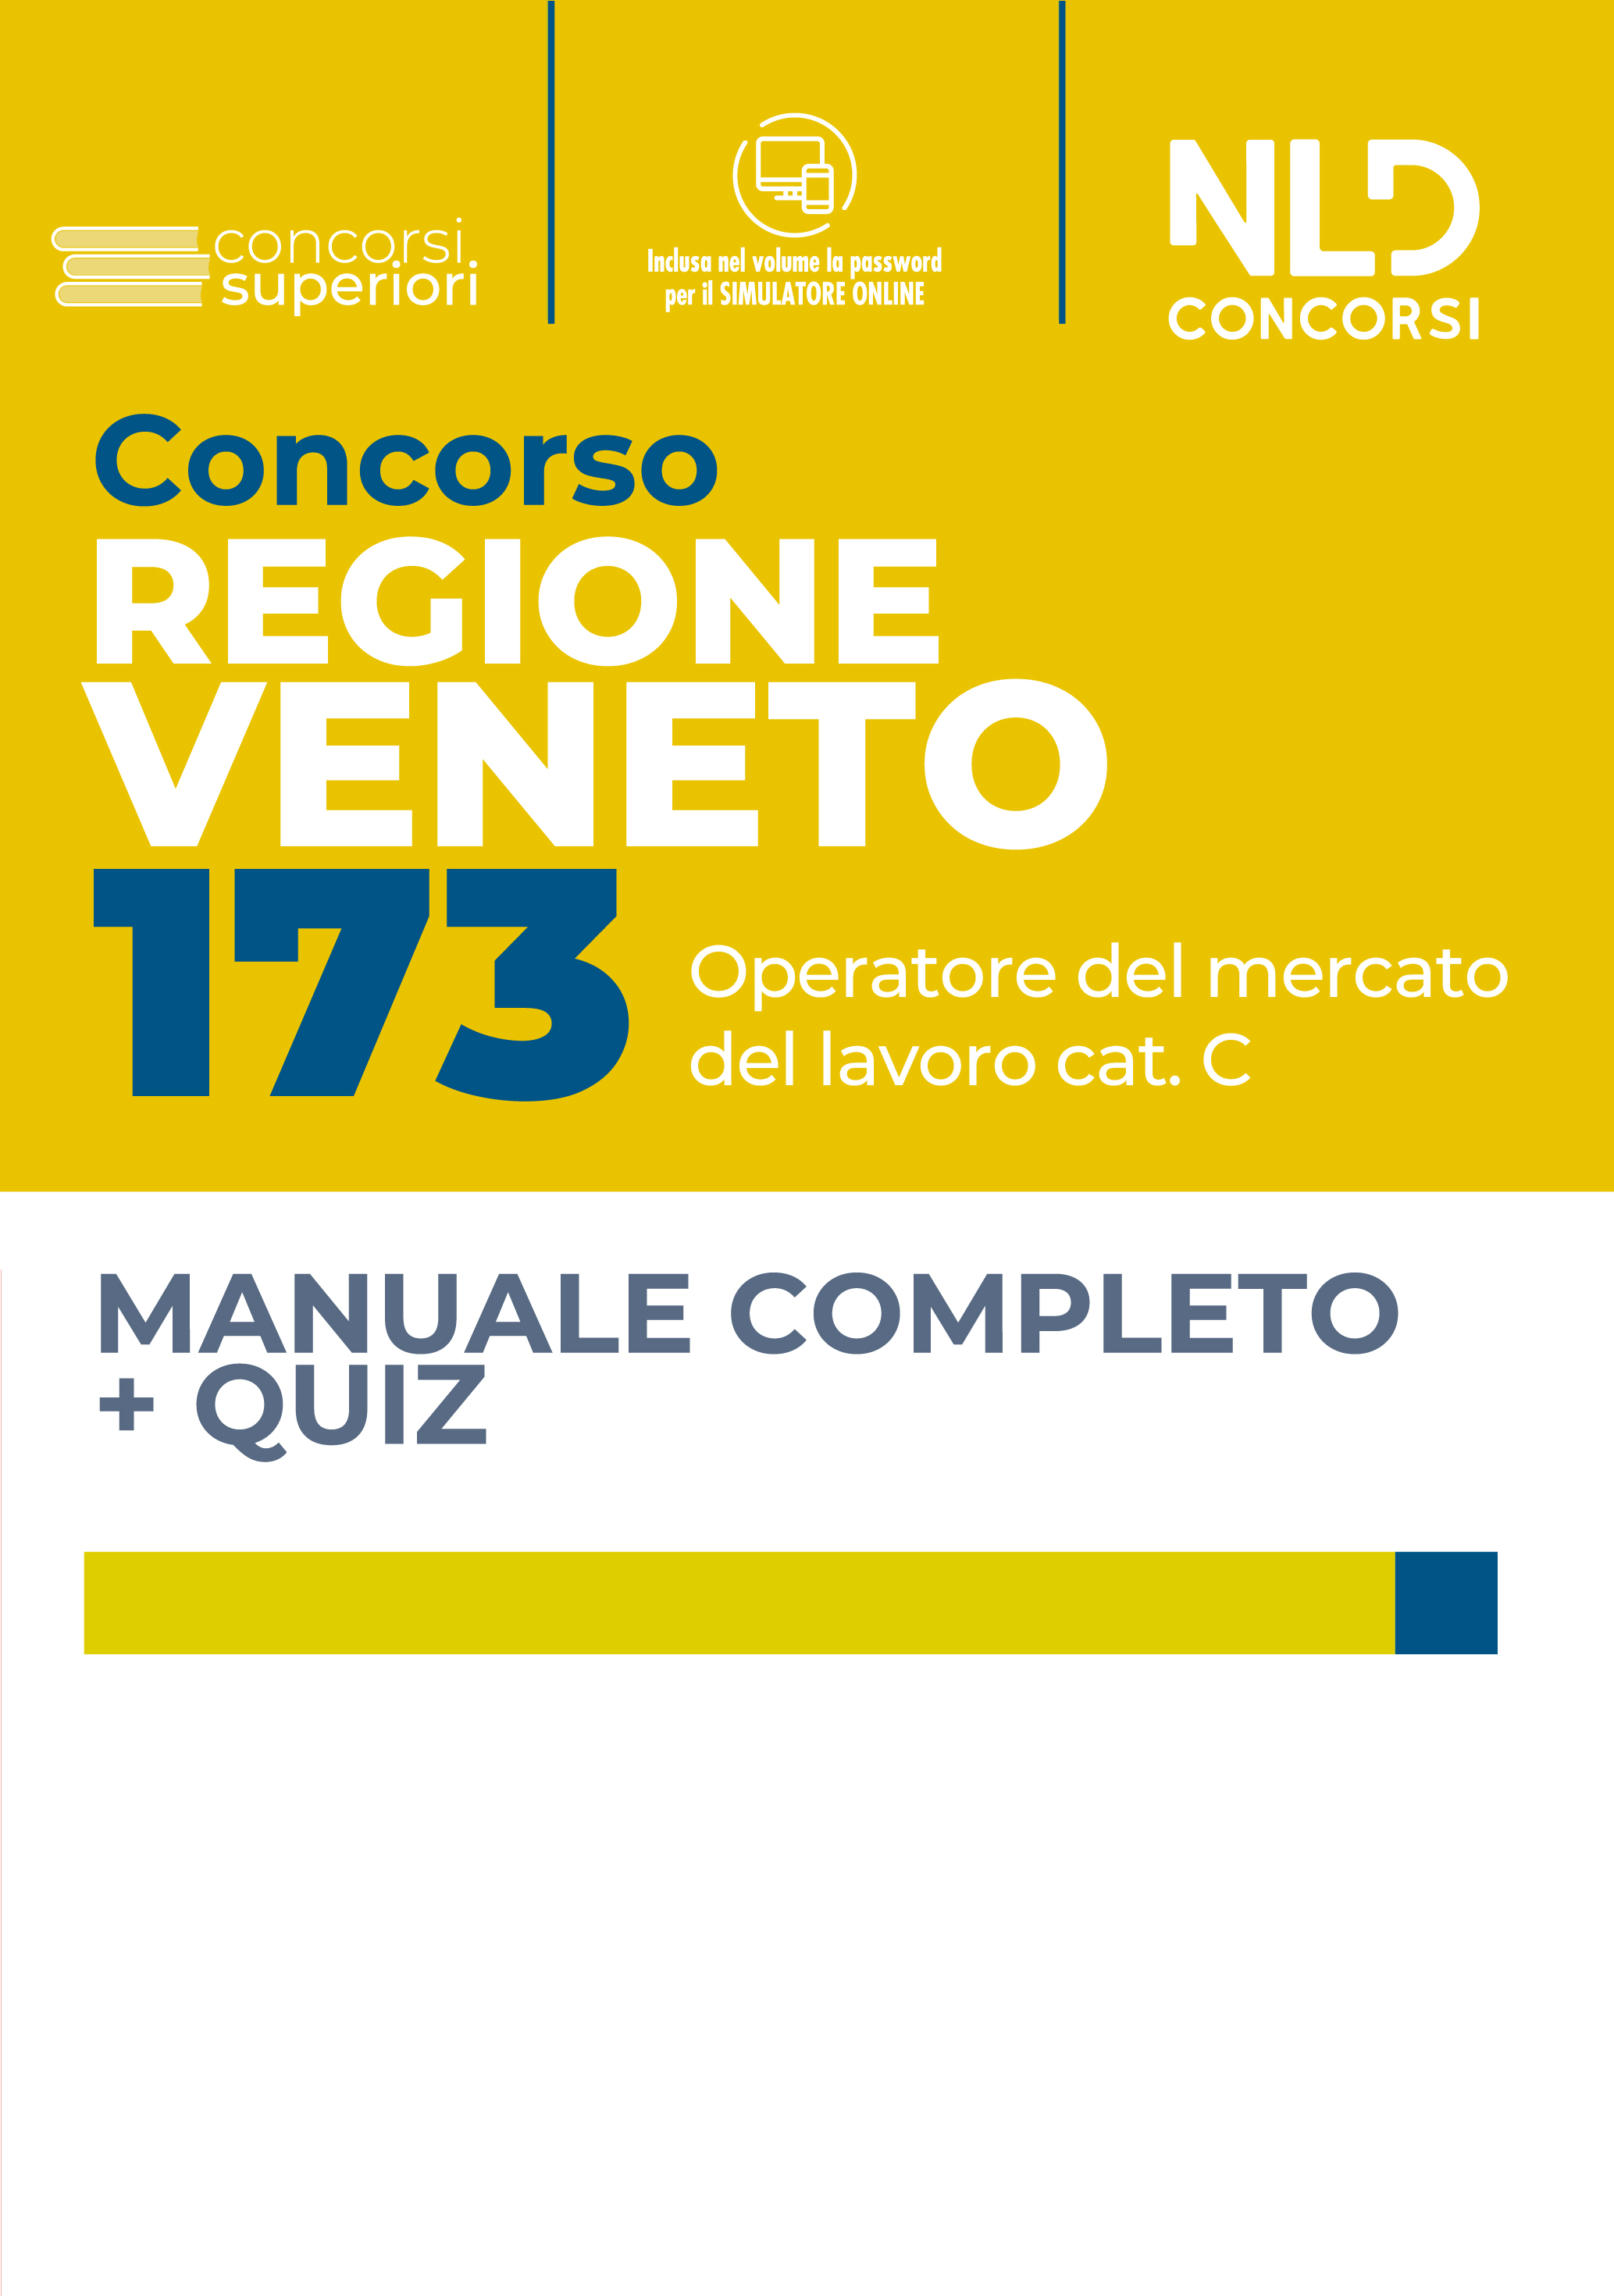 Concorso Regione Veneto – 143 Operatori Del Mercato del Lavoro Cat. C – Manuale + Quiz Completo